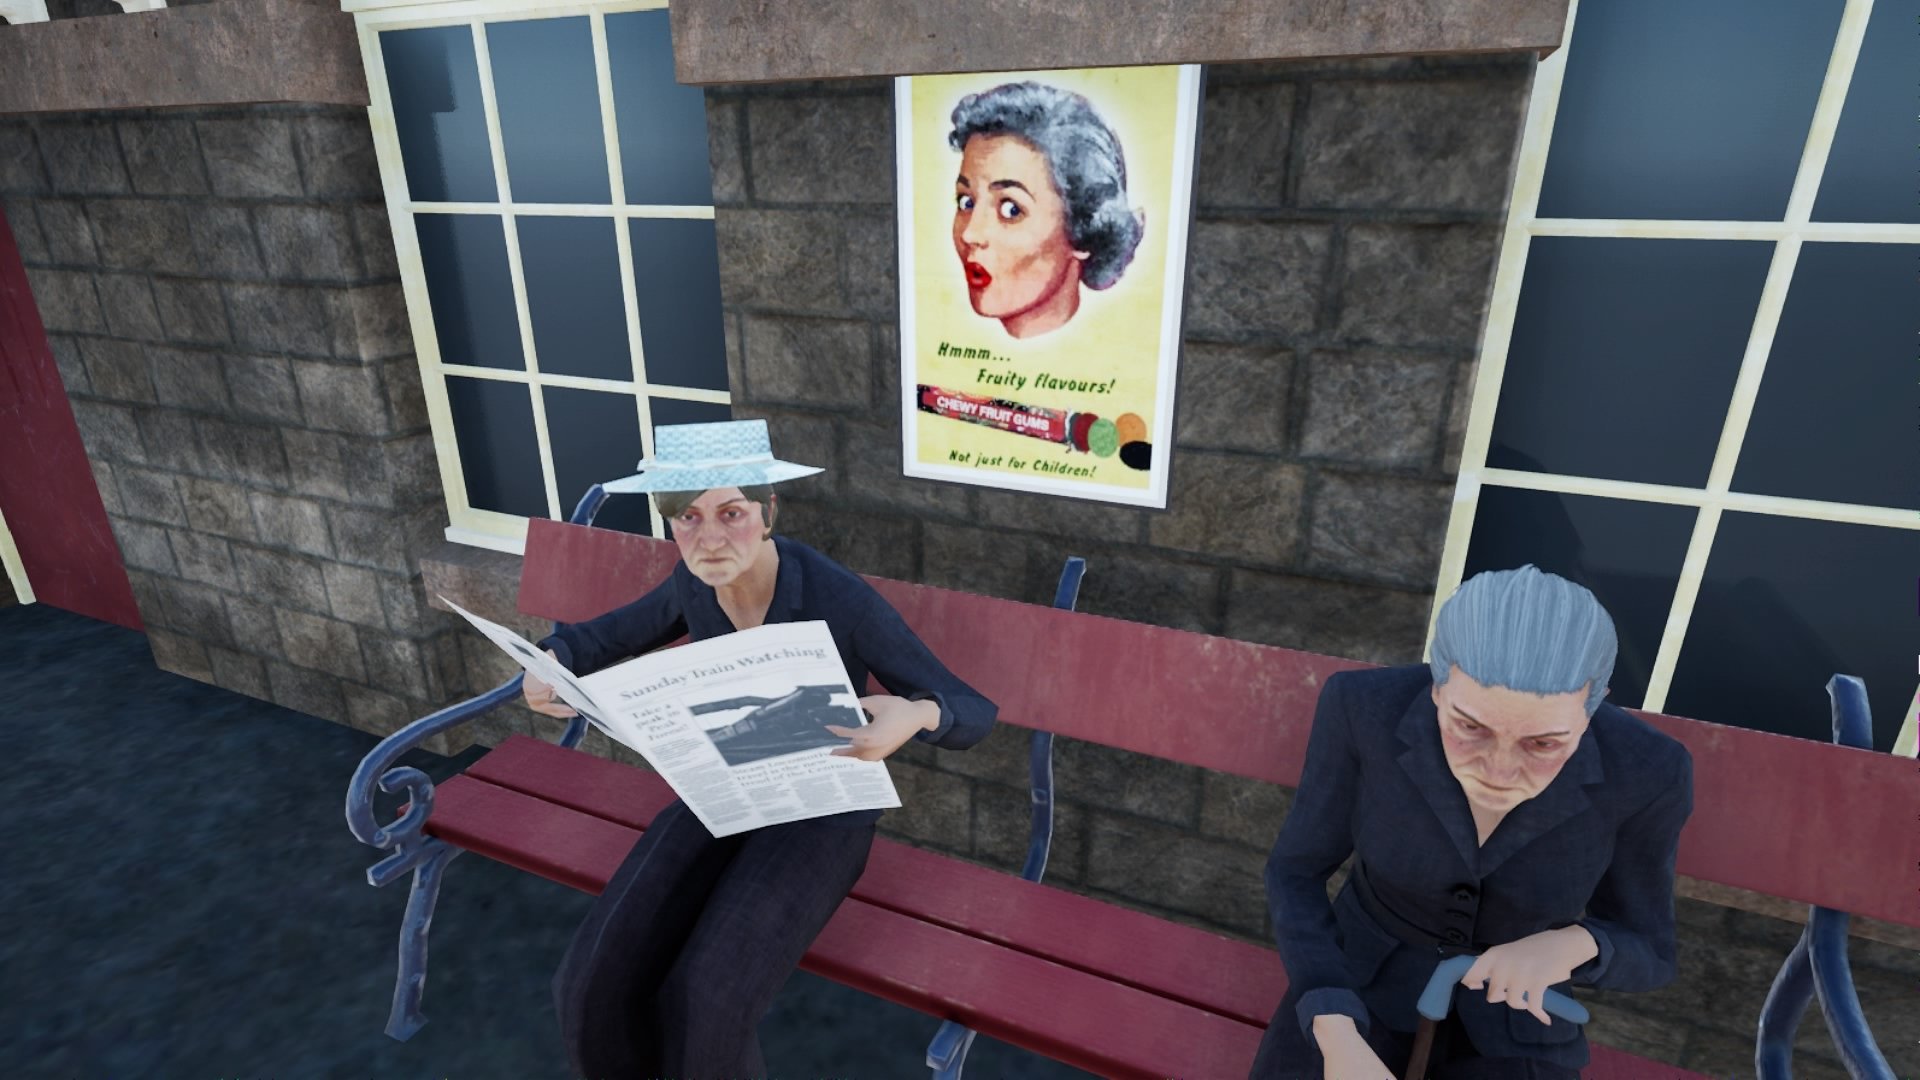 De "Old Lady" leest de krant aangaande stoomtreinen.